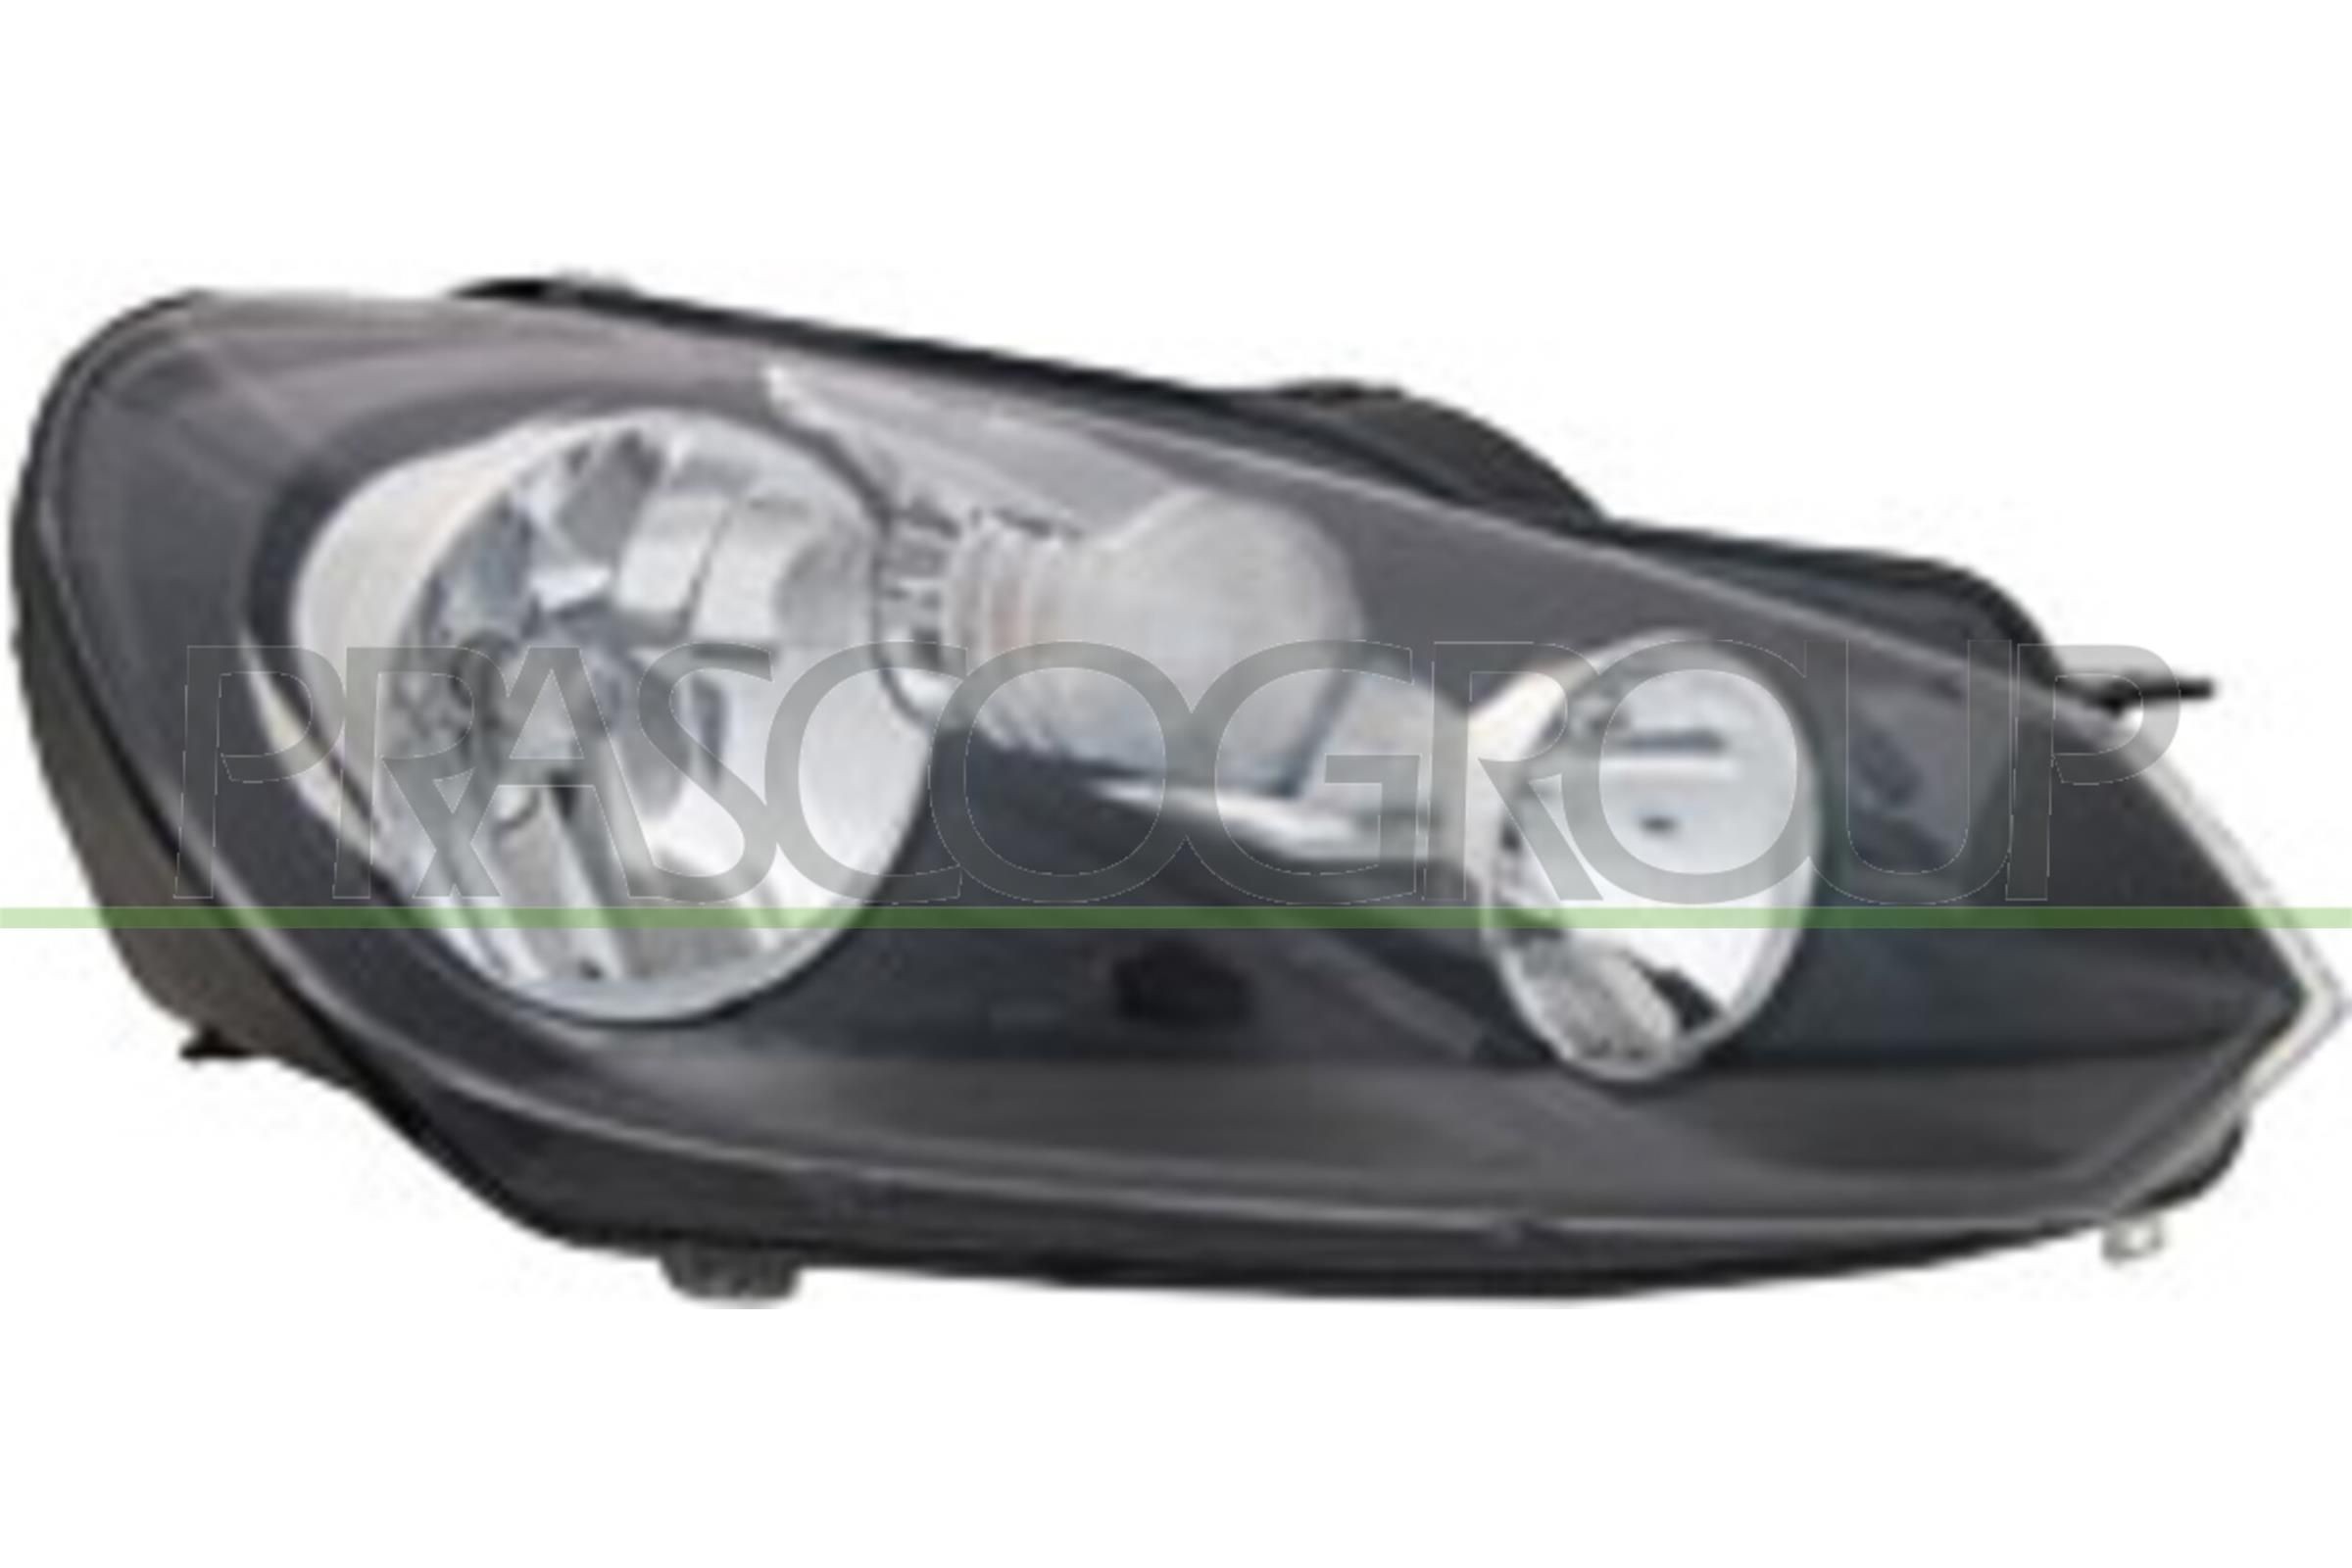 Scheinwerfer für Golf 6 LED und Xenon Benzin, Diesel, Autogas (LPG),  Elektro, Ethanol kaufen - Original Qualität und günstige Preise bei AUTODOC